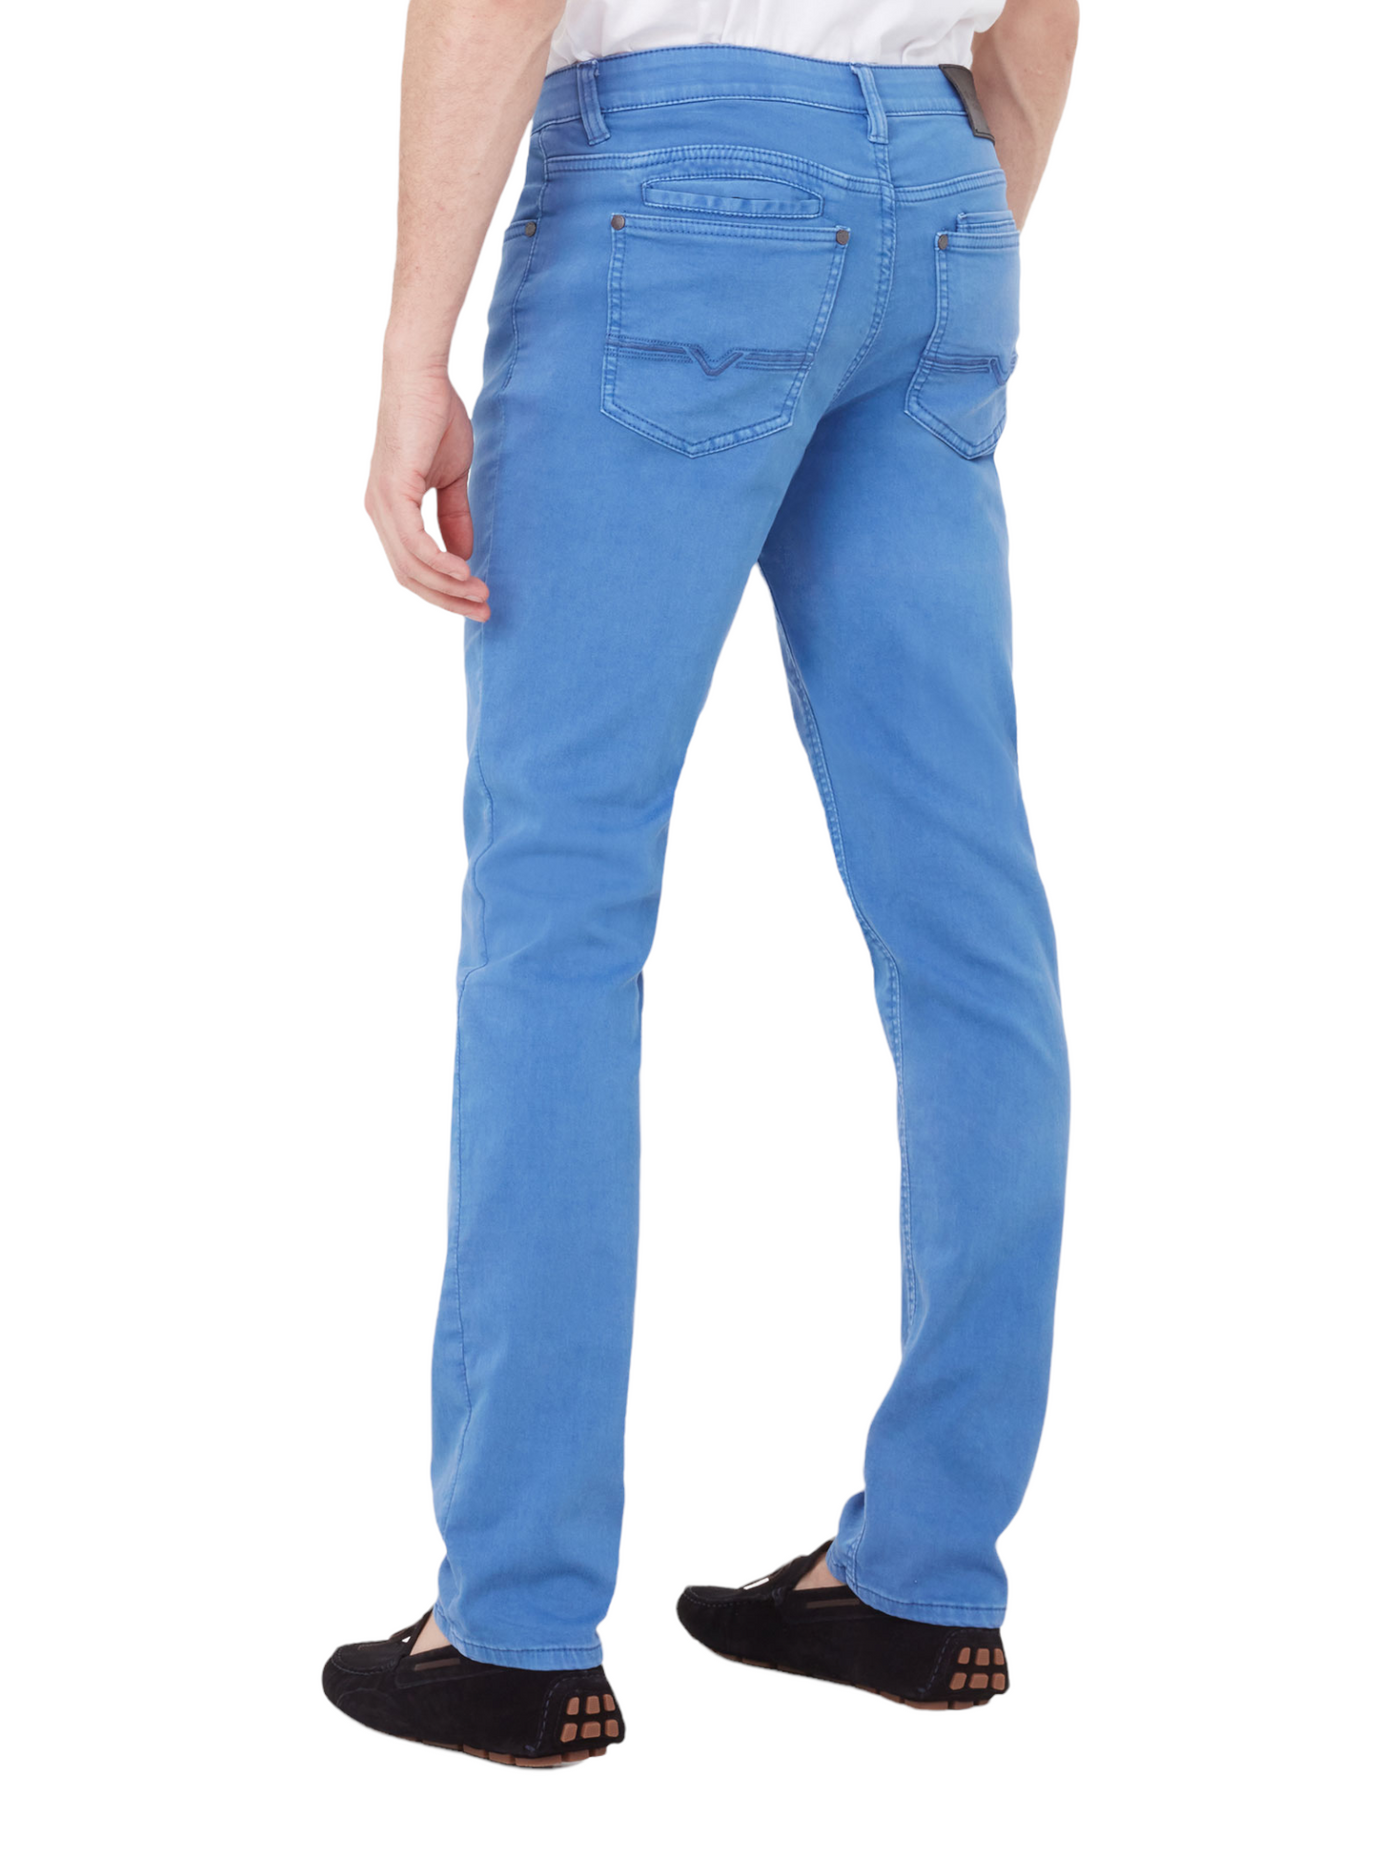 Pantalon de coton extensible bleu coupe semi-ajustée